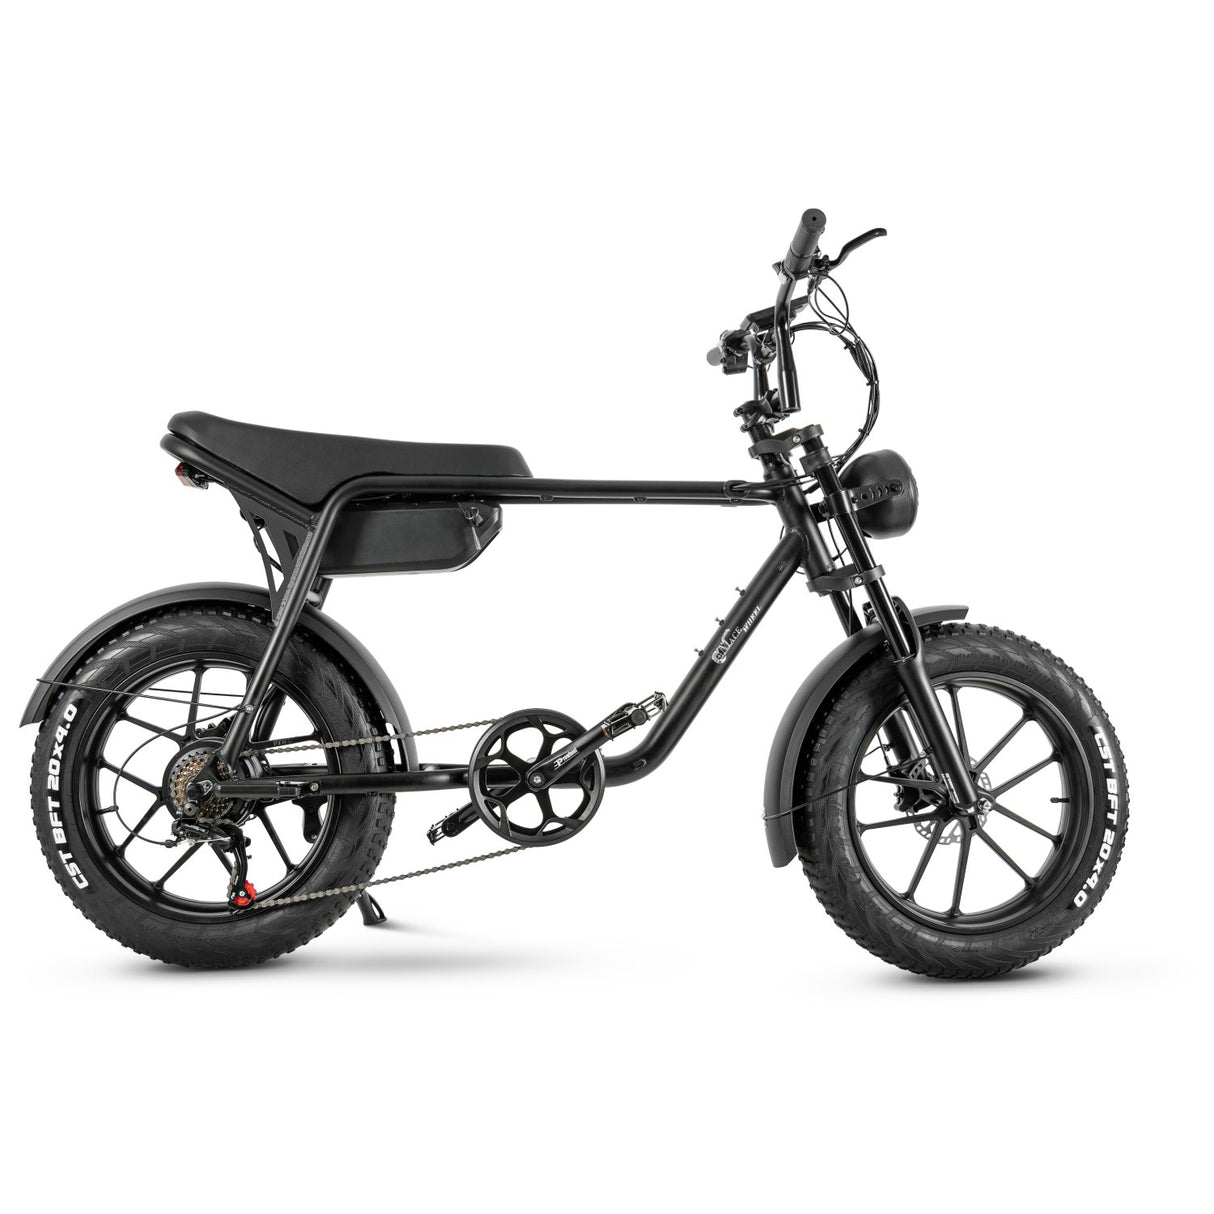 CMACE WHEEL Elektro fahrrad K20